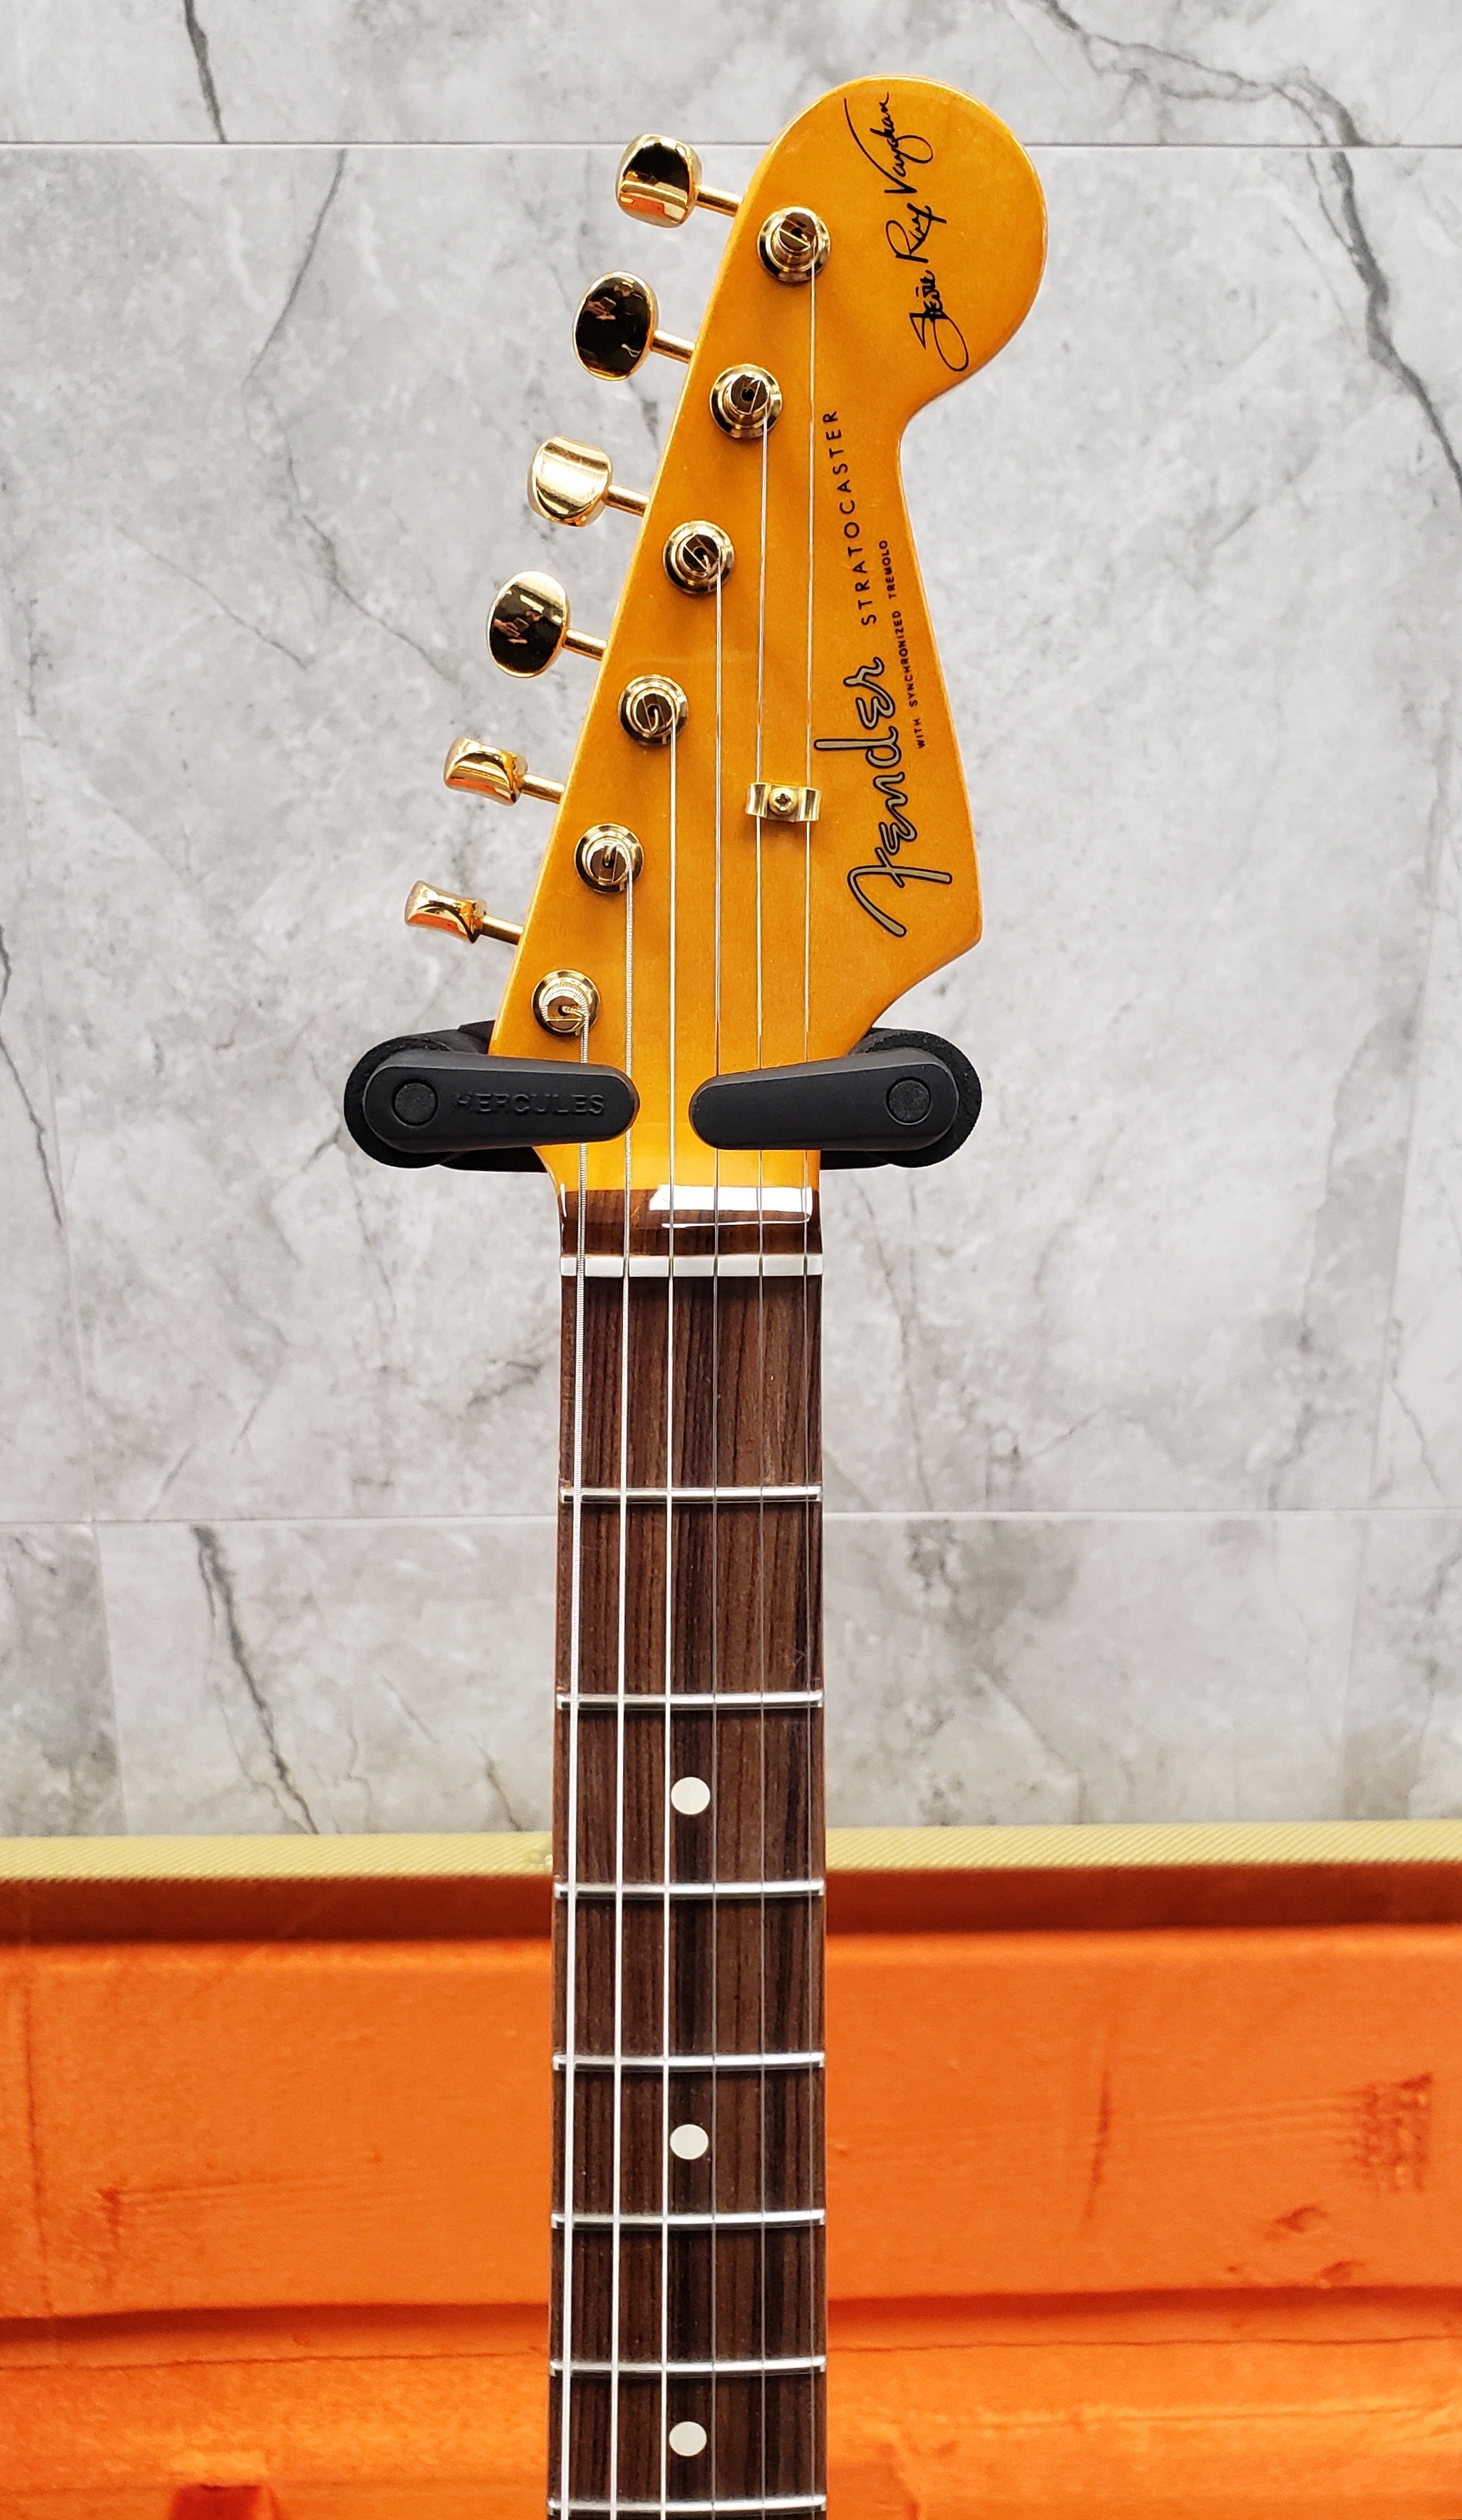 Fender Stevie Ray Vaughan SRV Stratocaster 3 Color Sunburst 0109200800